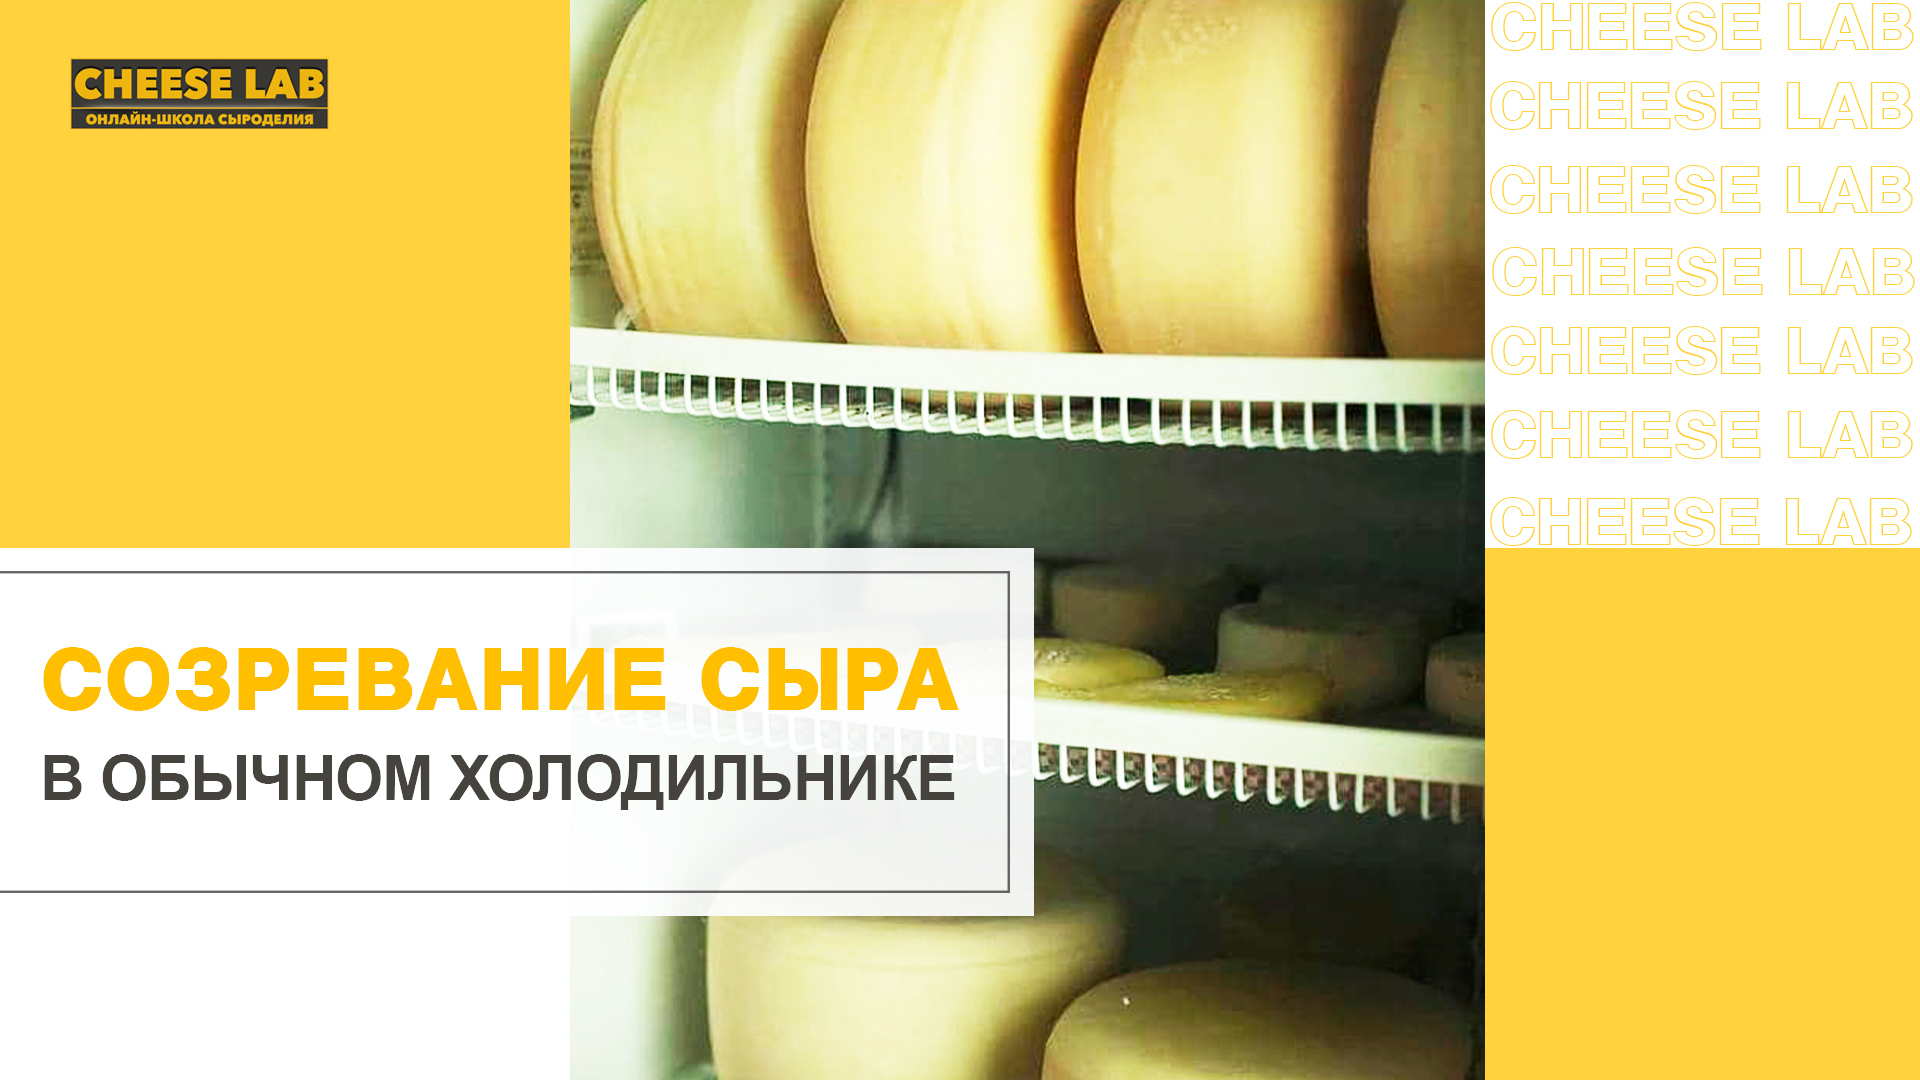 Холодильник для созревания сыра в домашних условиях